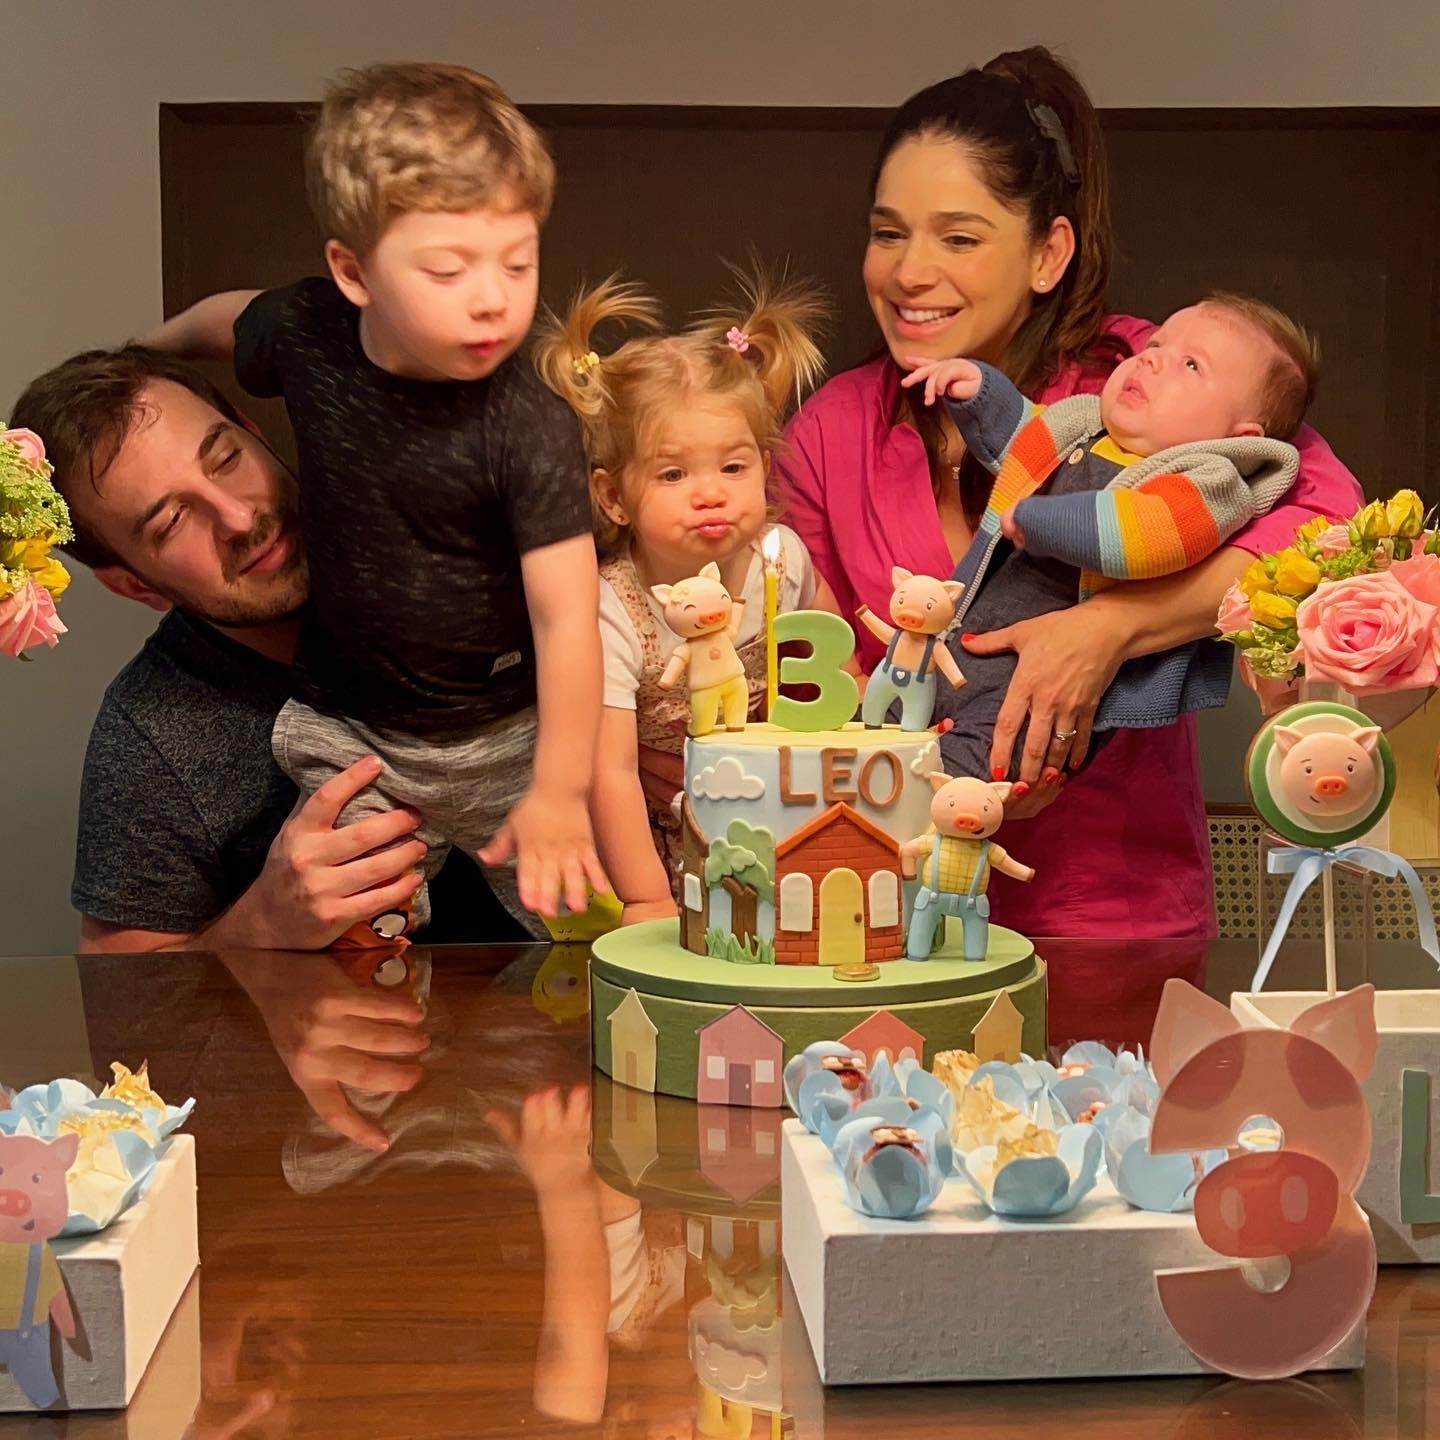 Sabrina Petraglia comemora três meses do filho, Léo, com família reunida (Foto: Reprodução / Instagram)